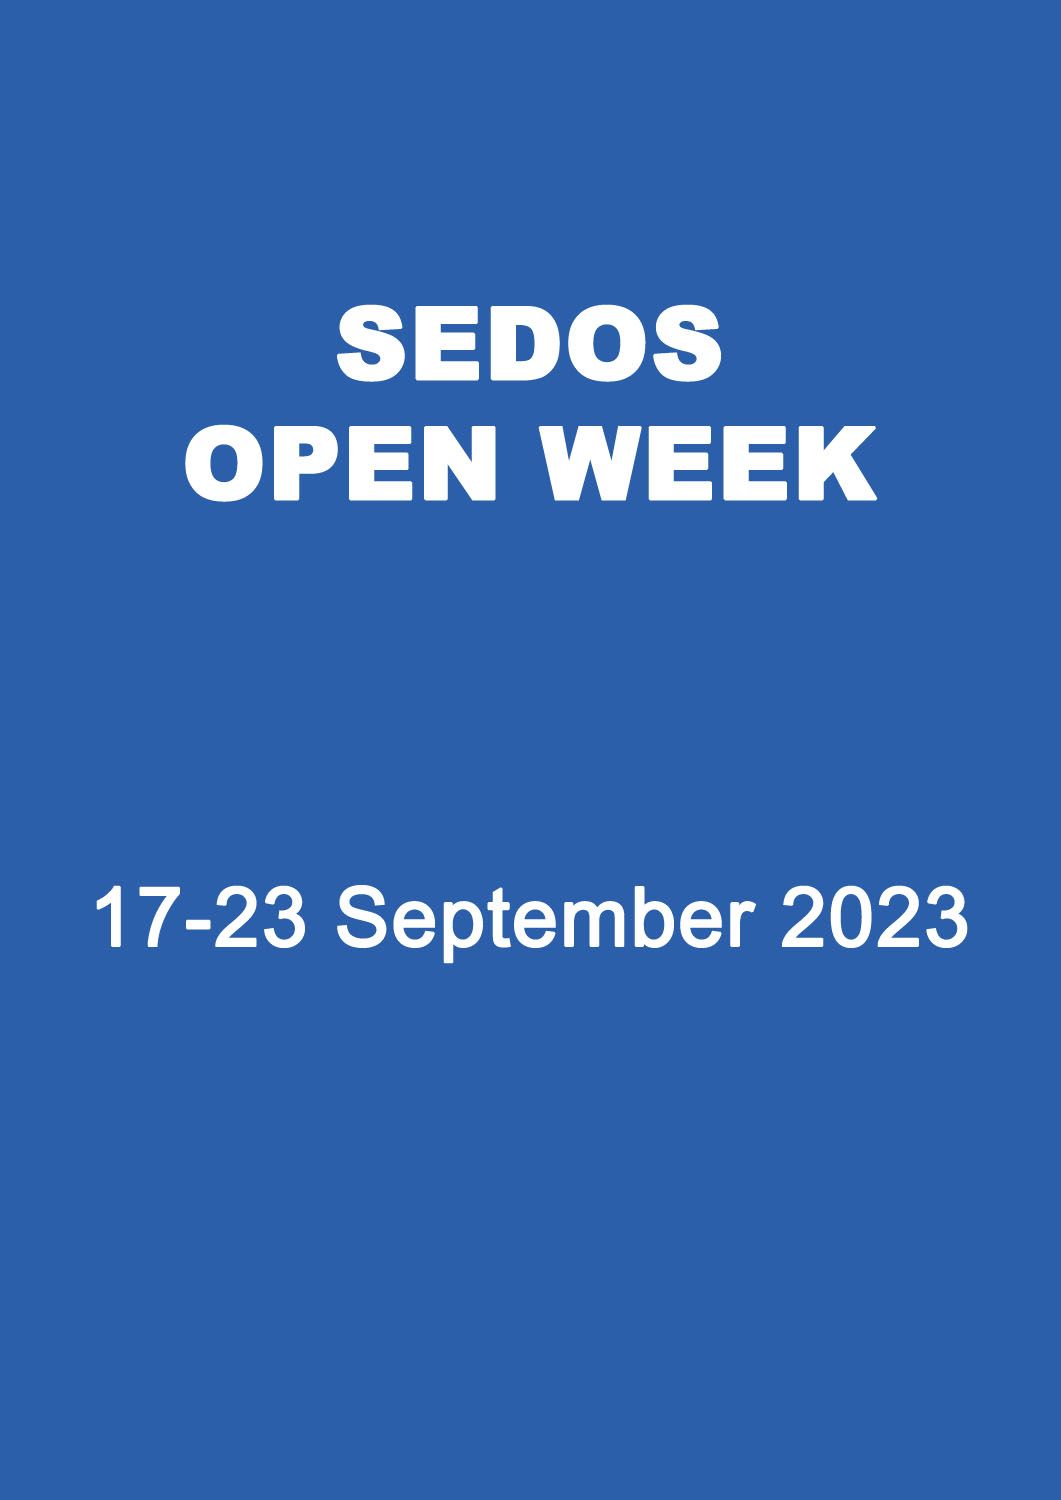 Sedos Open Week flyer image